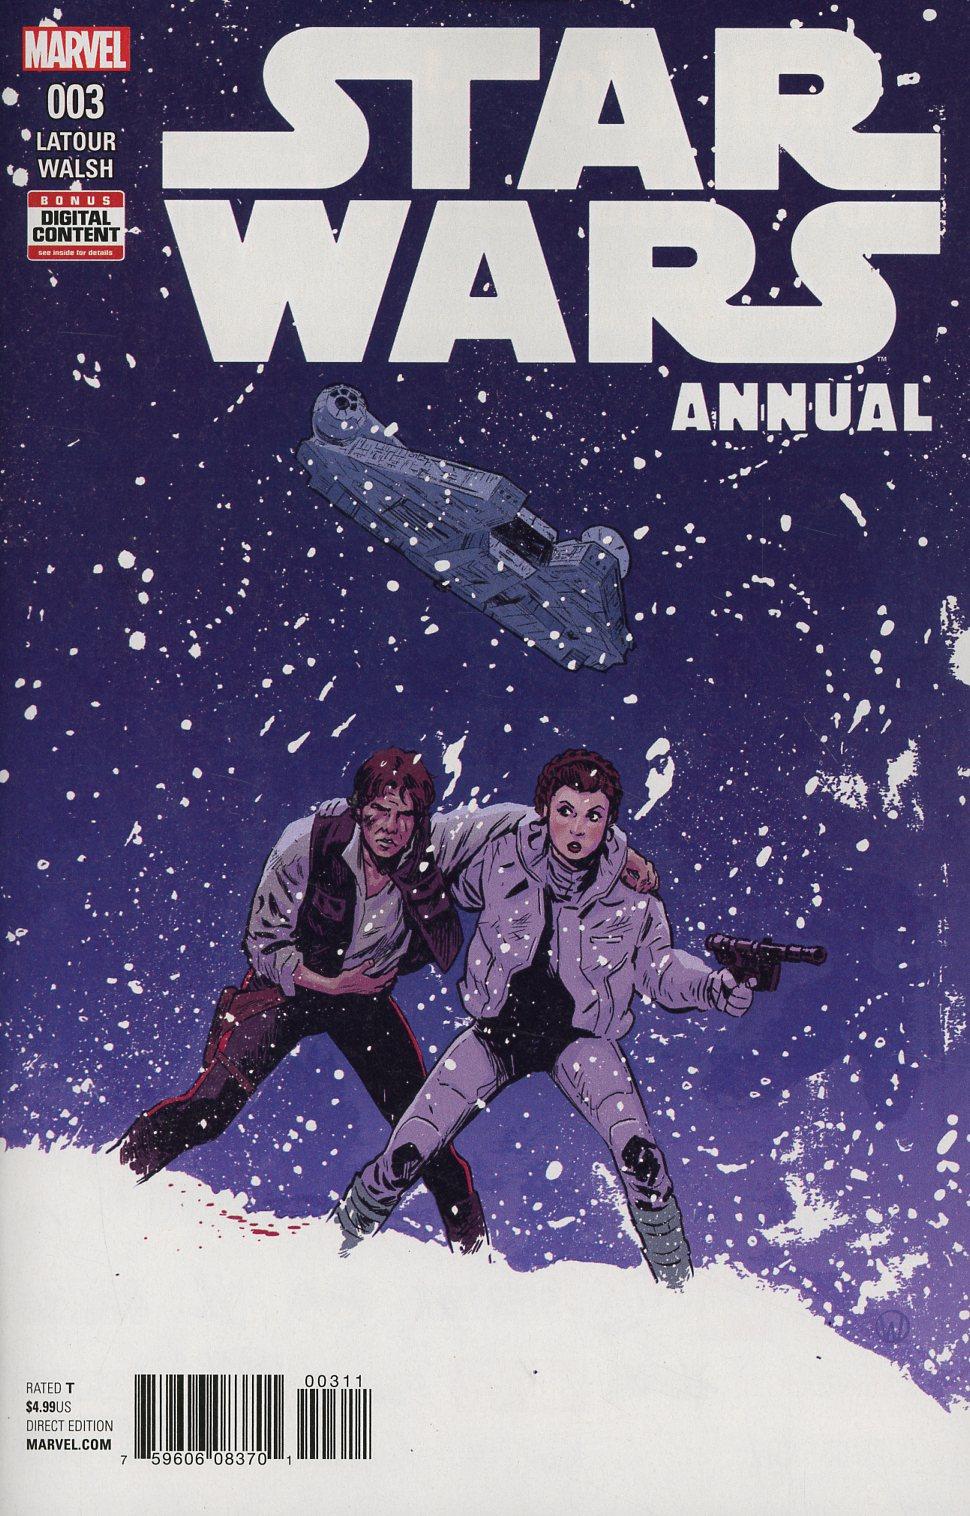 Star Wars (Marvel Comics) Vol. 4 Annual #3